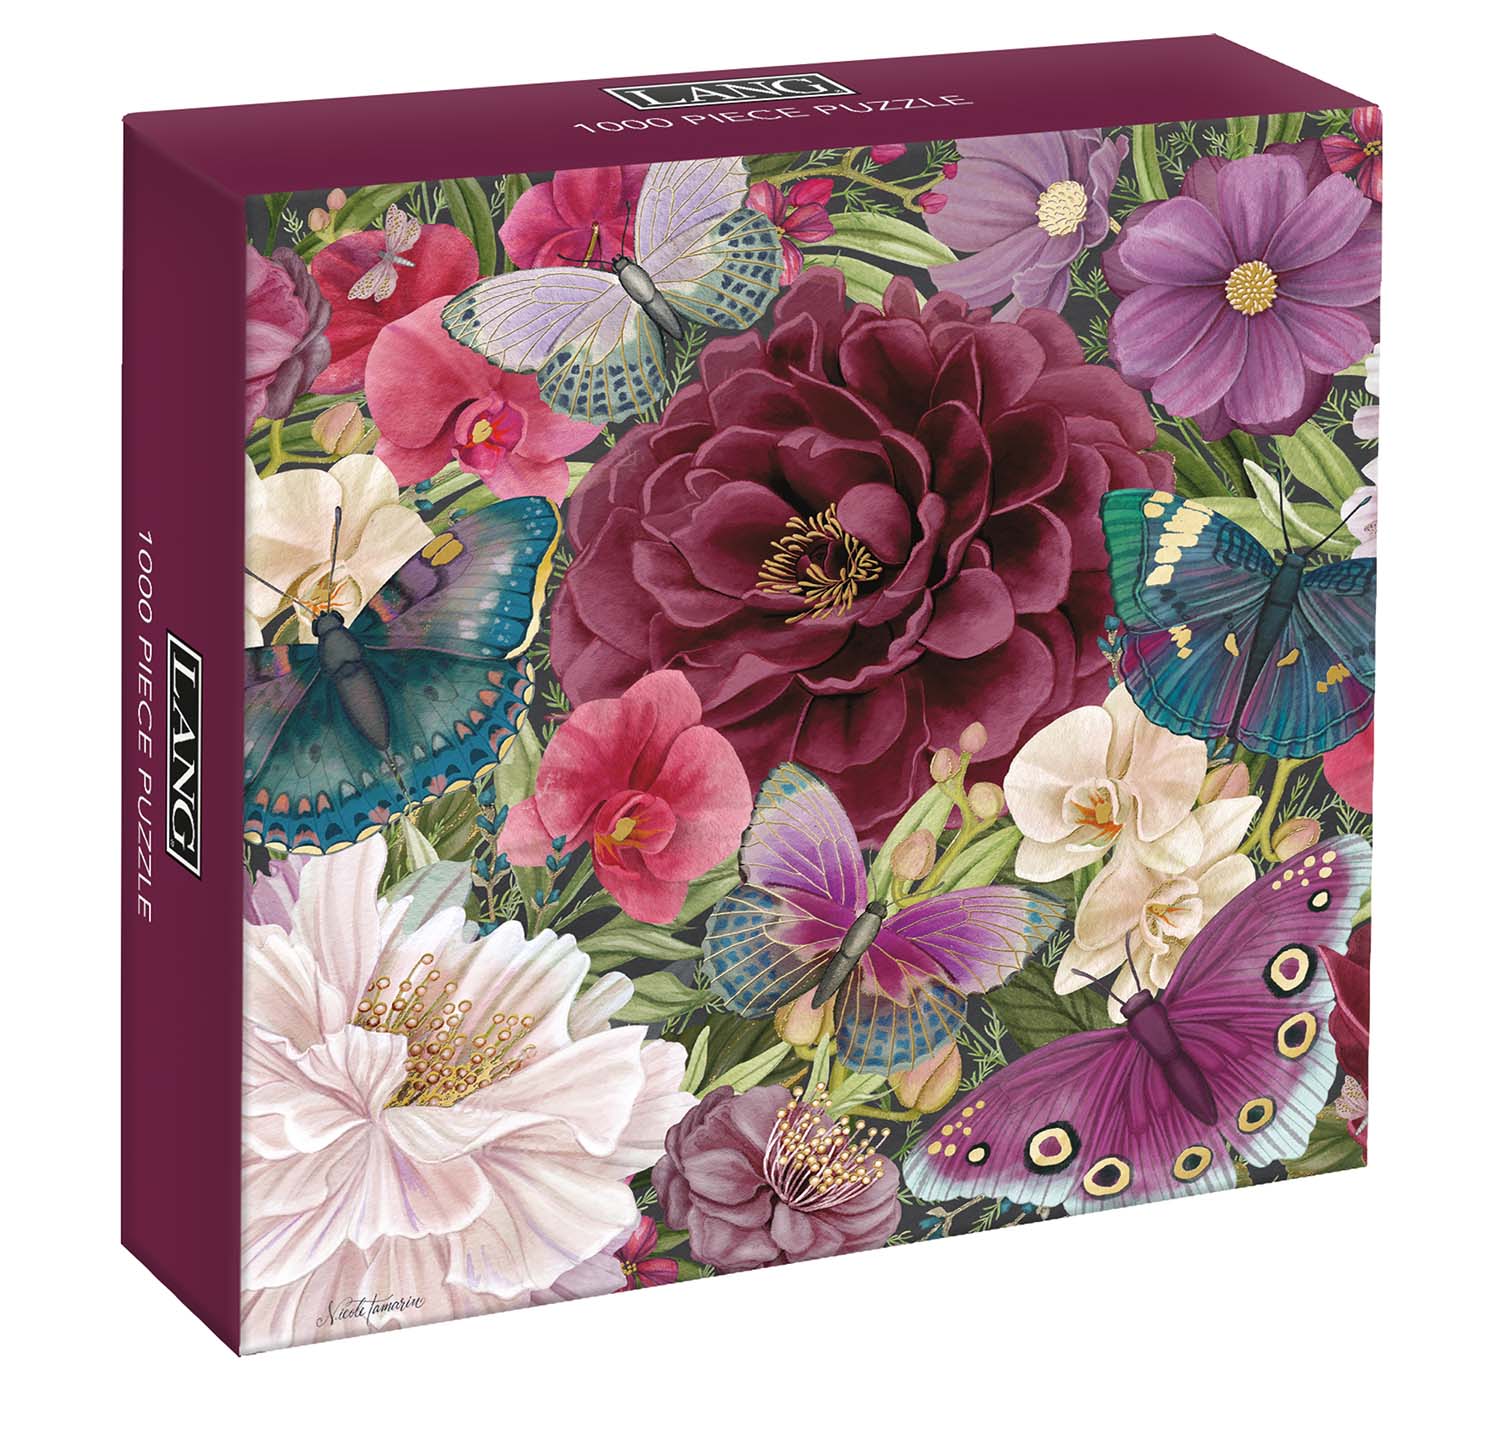 Midnight Garden Flower & Garden Jigsaw Puzzle